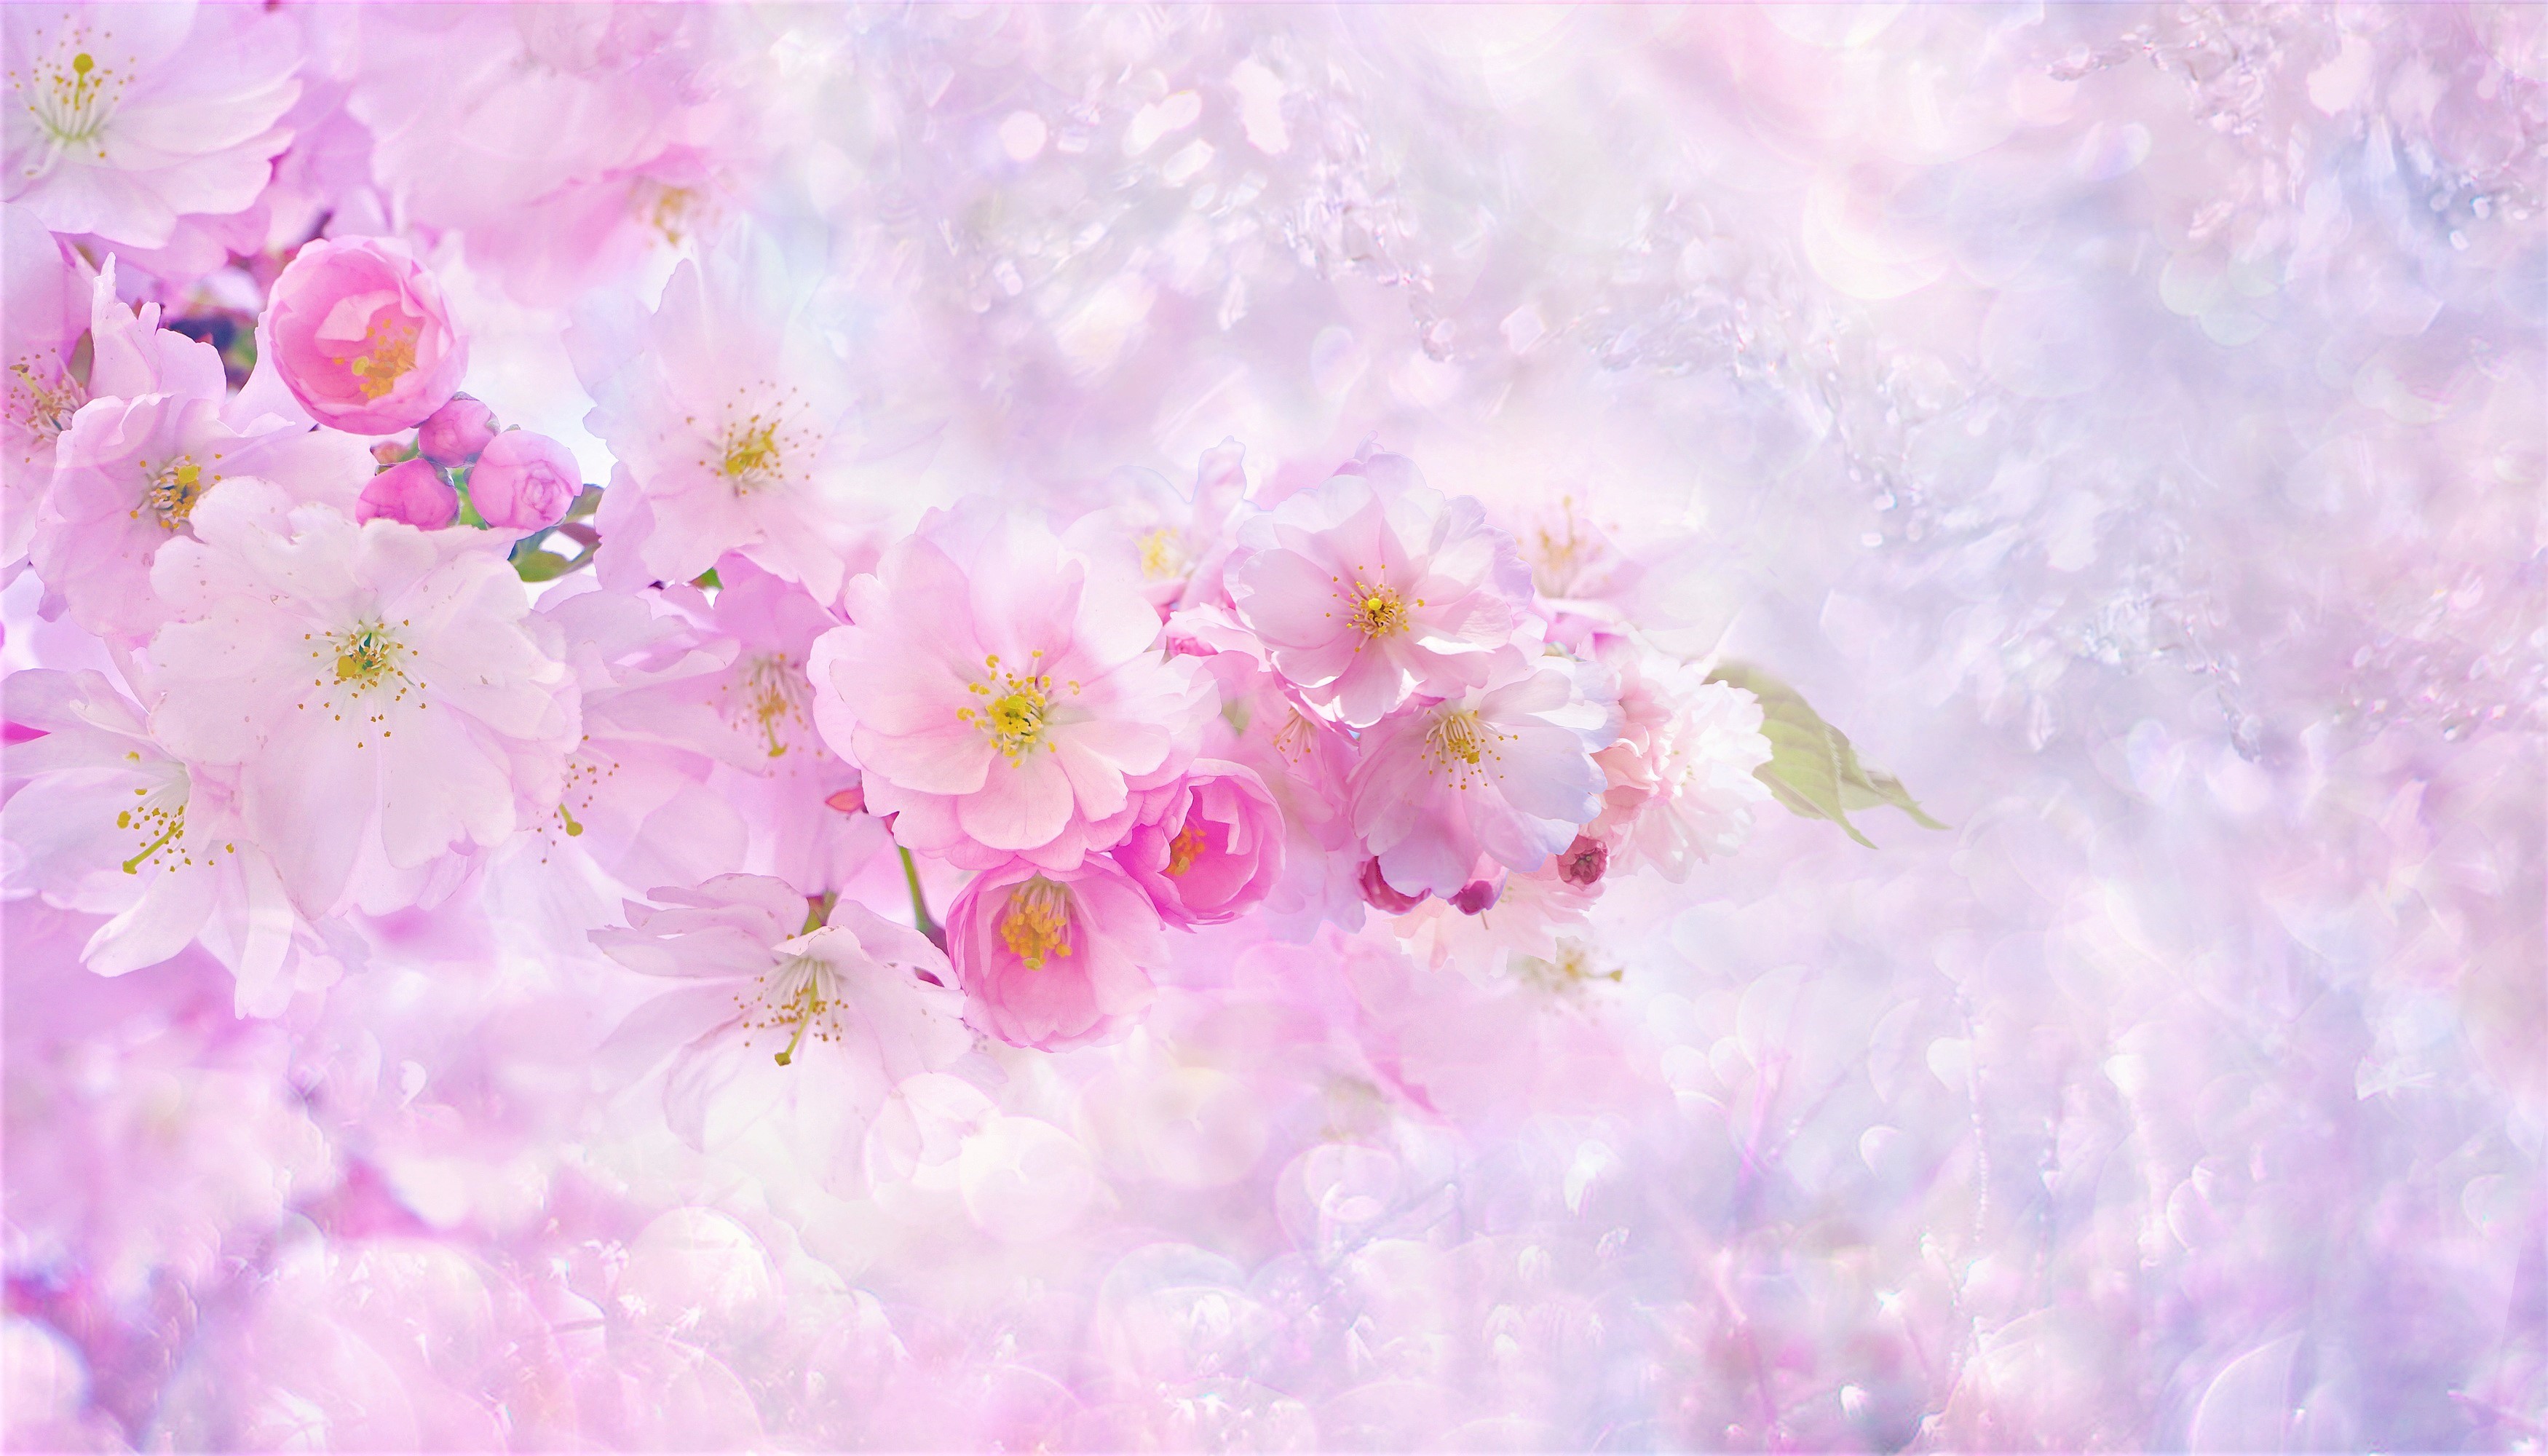 Hình Nền Hoa Anh đào Rơi Tải Về Miễn Phí Hình ảnh giọt ngọt ngào bầu trời  sakura cerezo Sáng Tạo Từ Lovepik